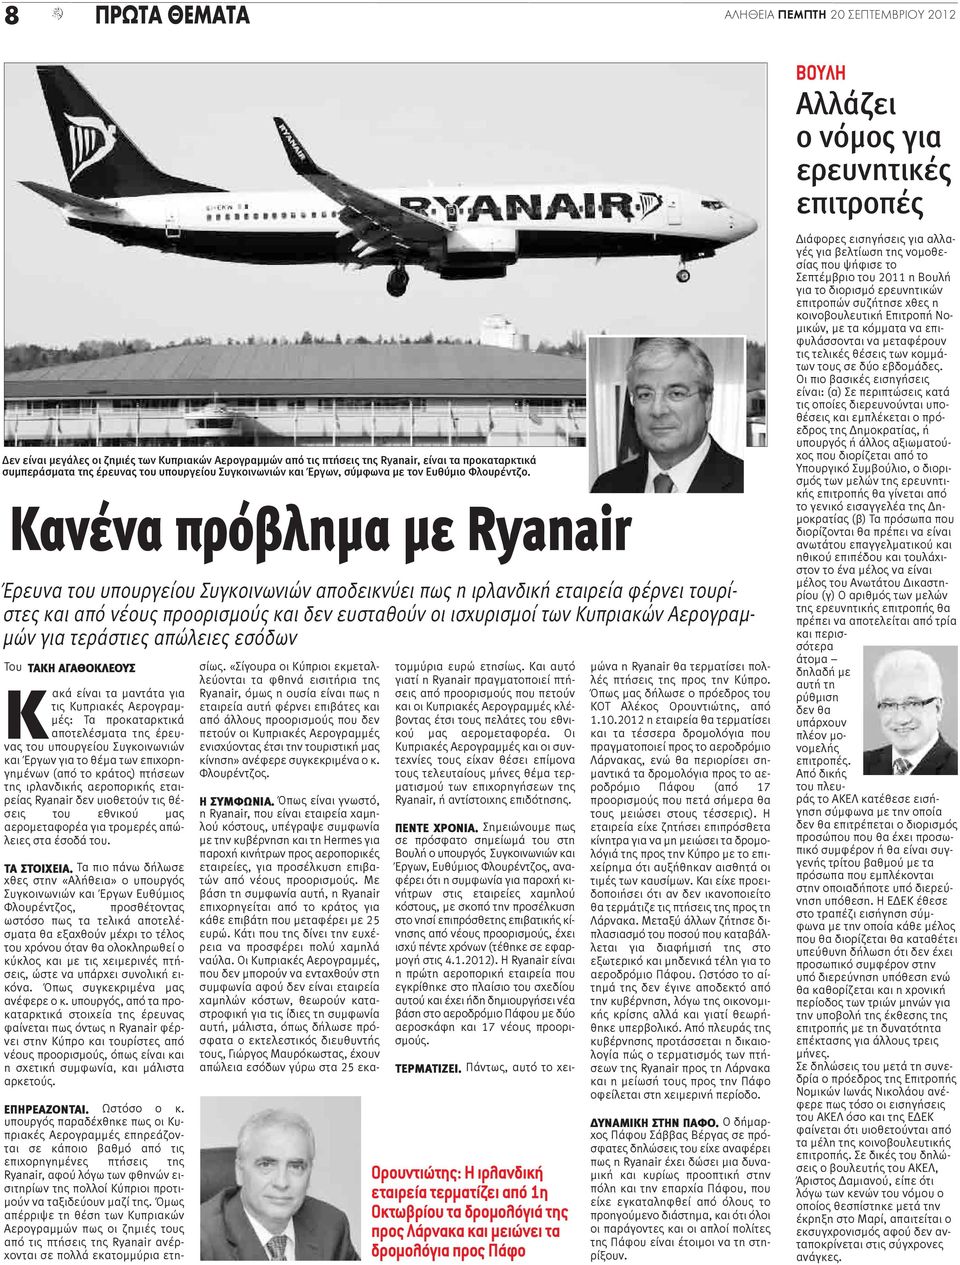 Κανένα πρόβλημα με Ryanair Έρευνα του υπουργείου Συγκοινωνιών αποδεικνύει πως η ιρλανδική εταιρεία φέρνει τουρίστες και από νέους προορισμούς και δεν ευσταθούν οι ισχυρισμοί των Κυπριακών Αερογραμμών